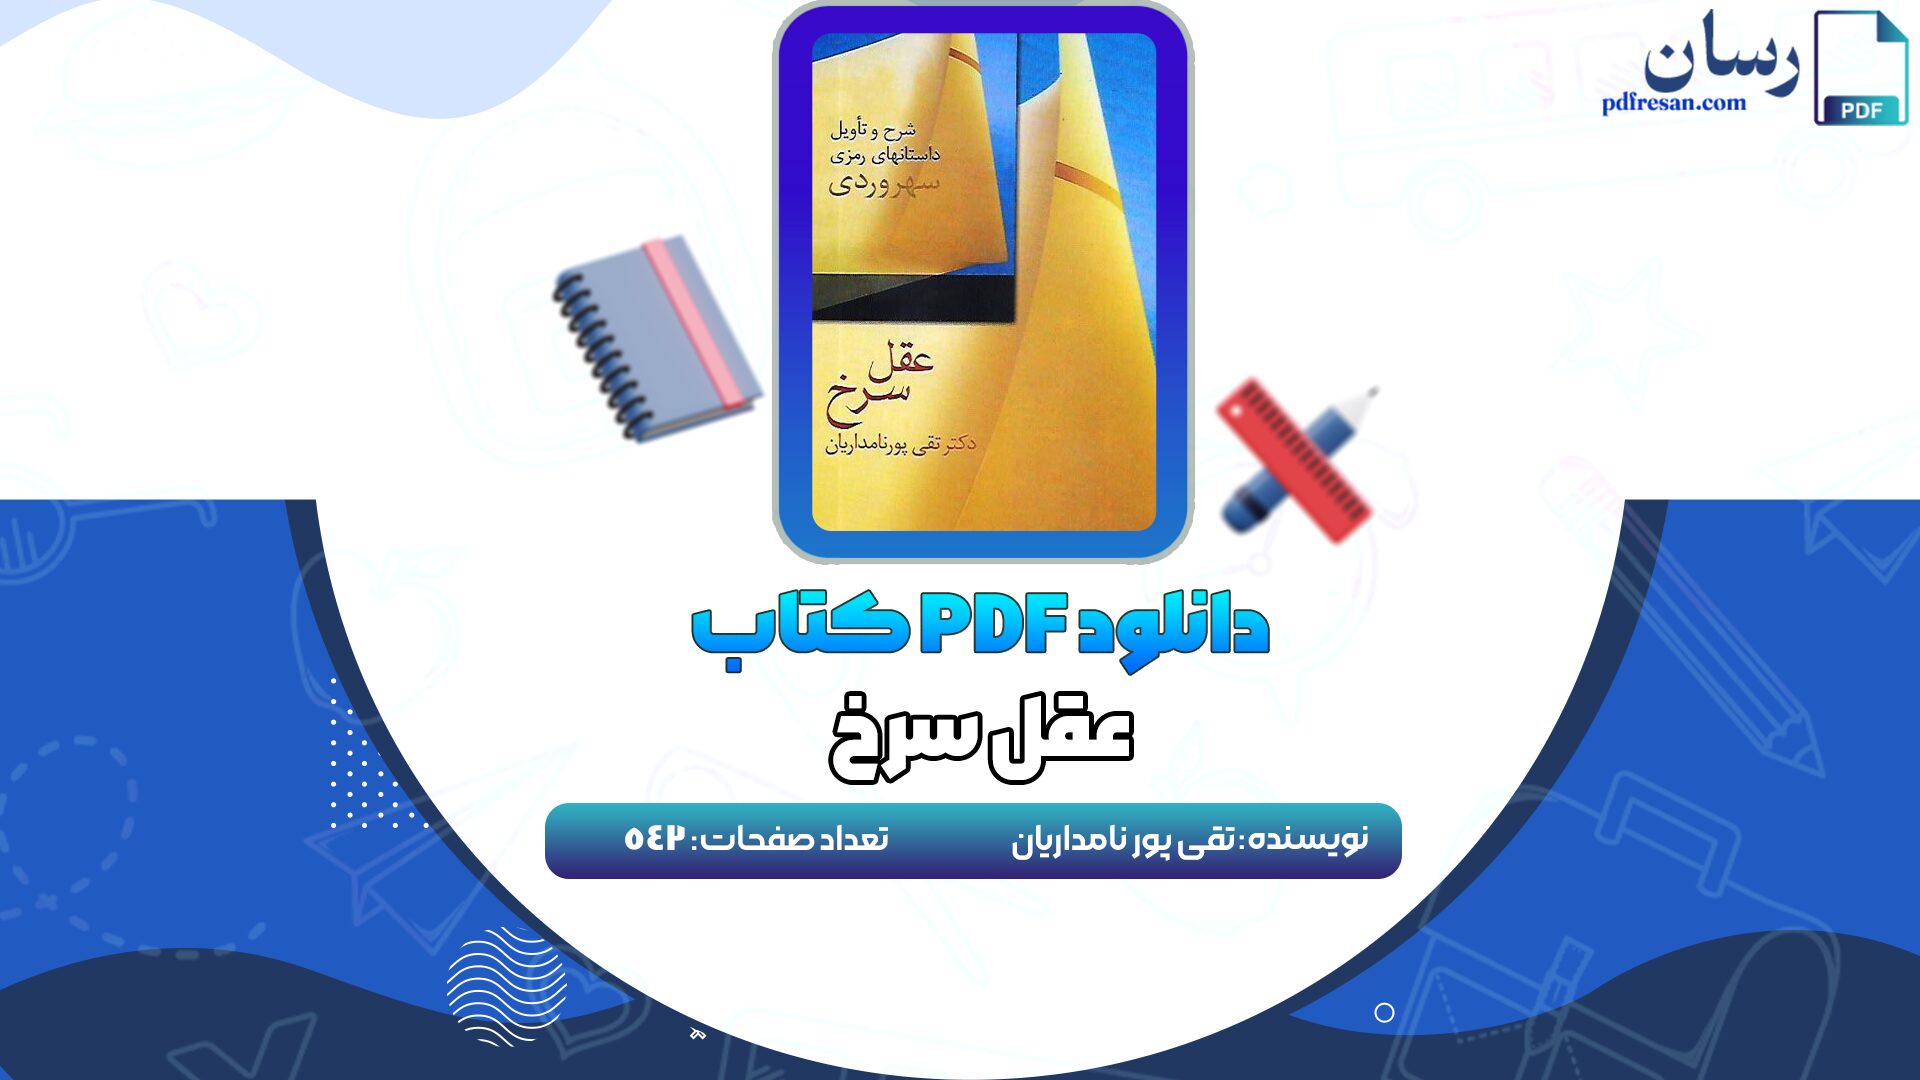 دانلود کتاب عقل سرخ تقی پور نامداریان PDF